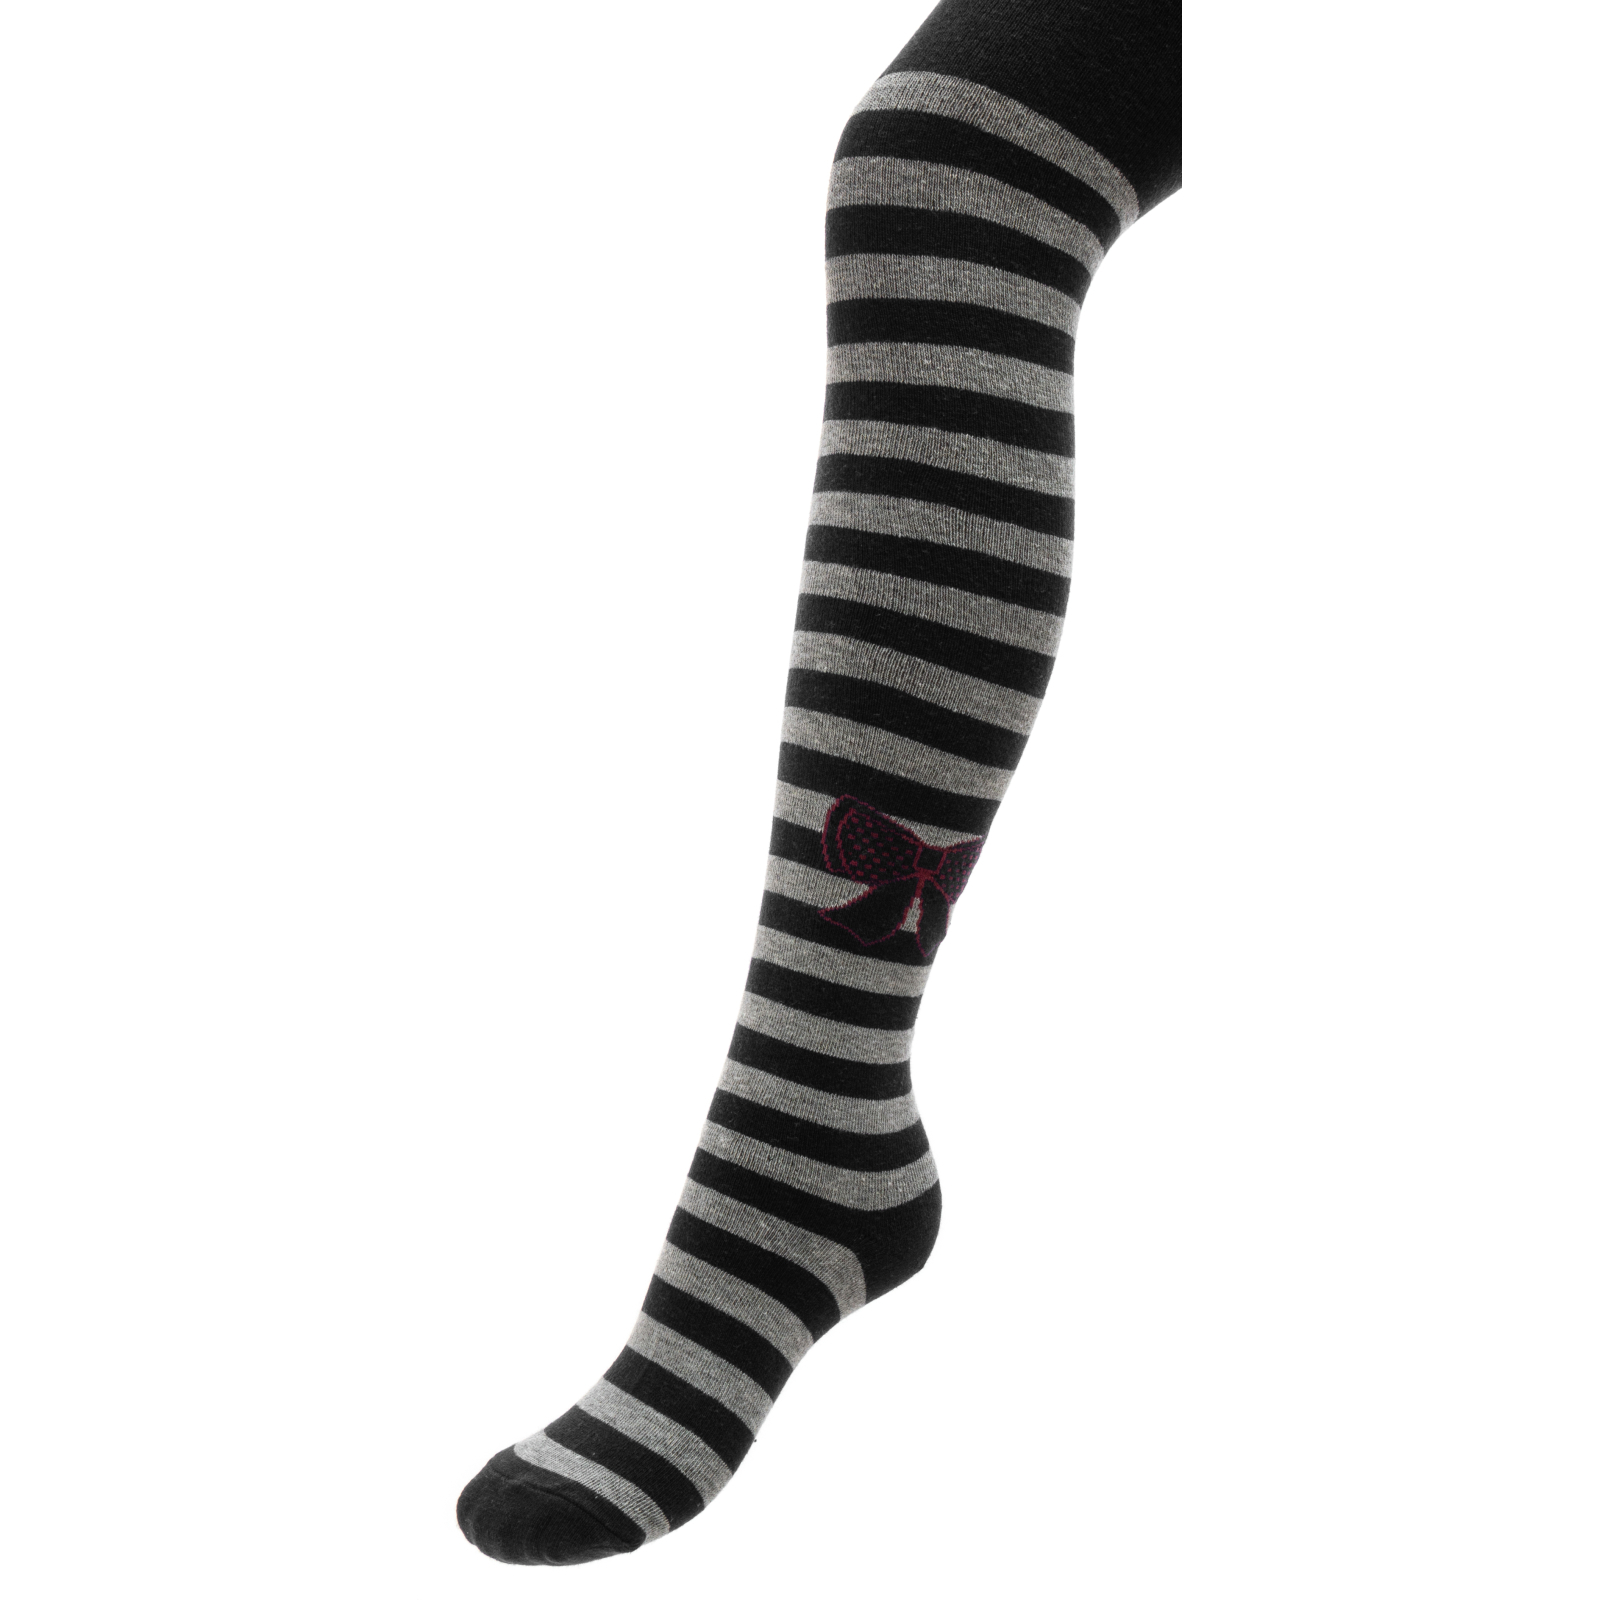 Колготки UCS Socks з бантами (M0C0301-2183-9G-black)